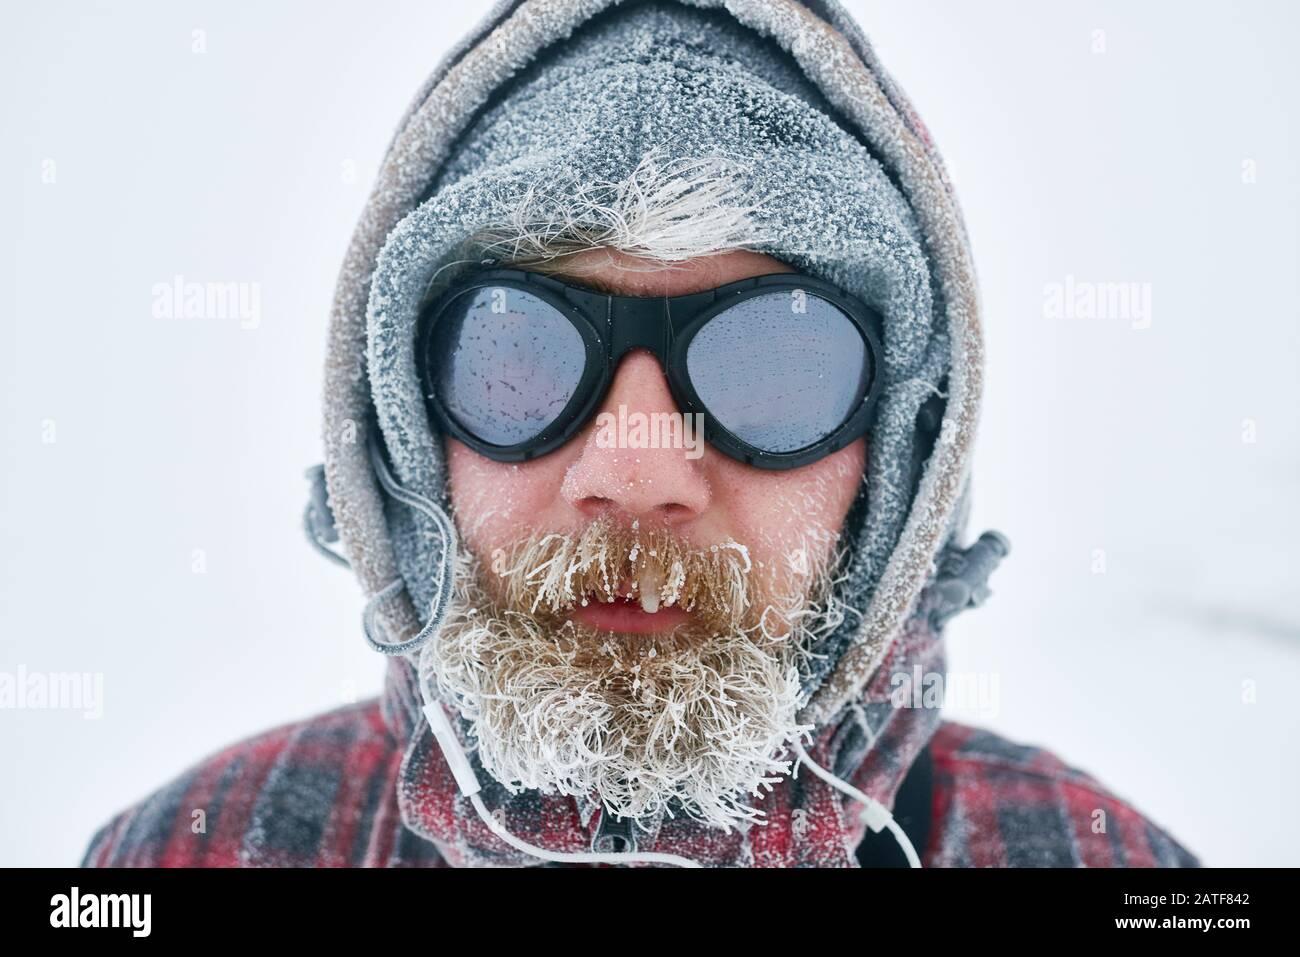 Portrait d'un sportif dans des lunettes de protection et des vêtements d'hiver Banque D'Images